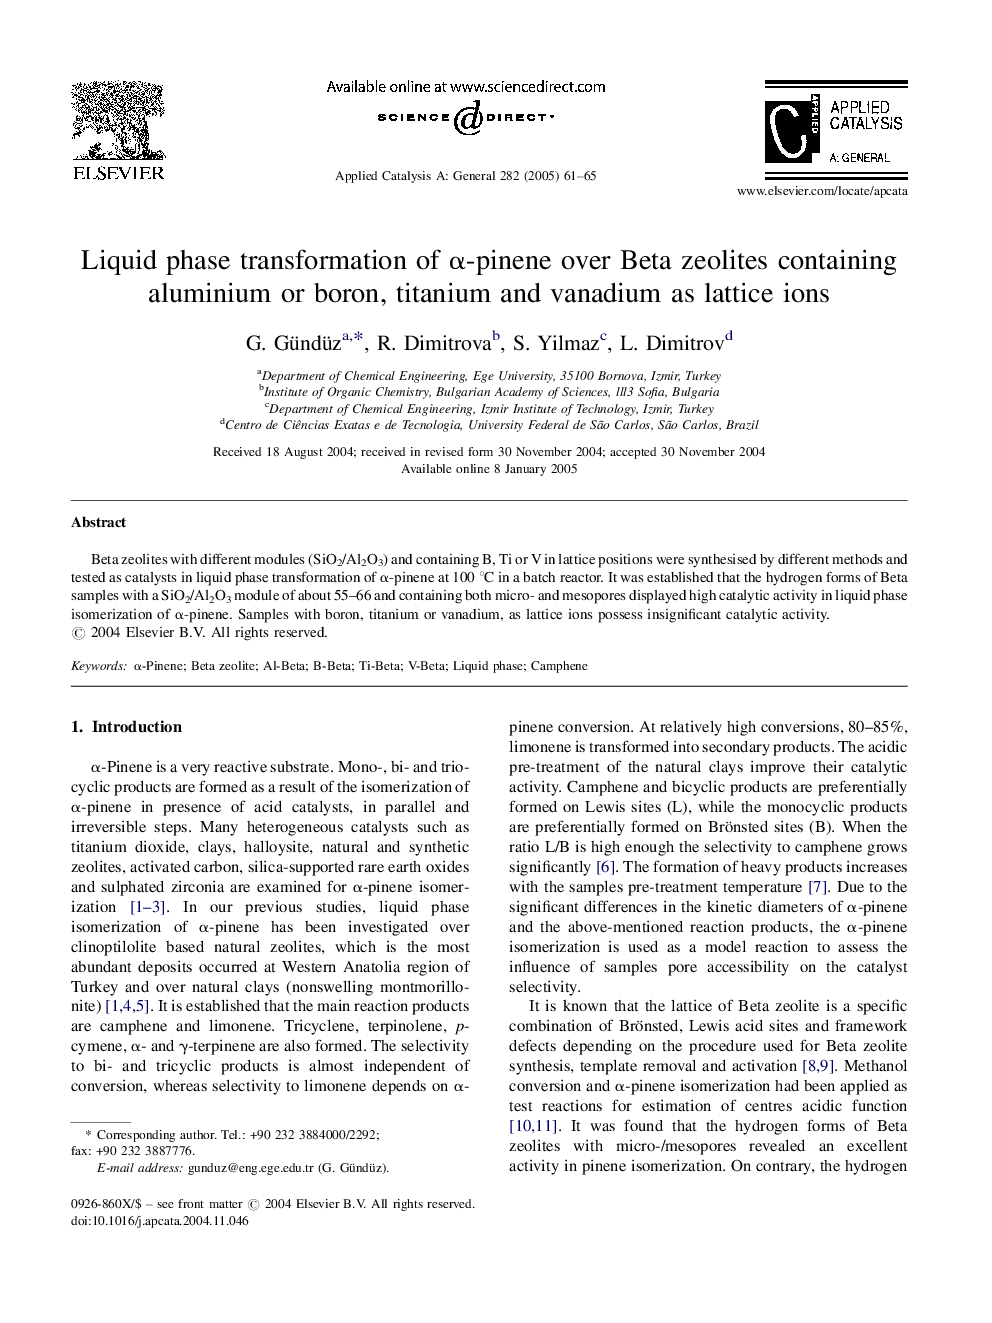 Liquid phase transformation of Î±-pinene over Beta zeolites containing aluminium or boron, titanium and vanadium as lattice ions